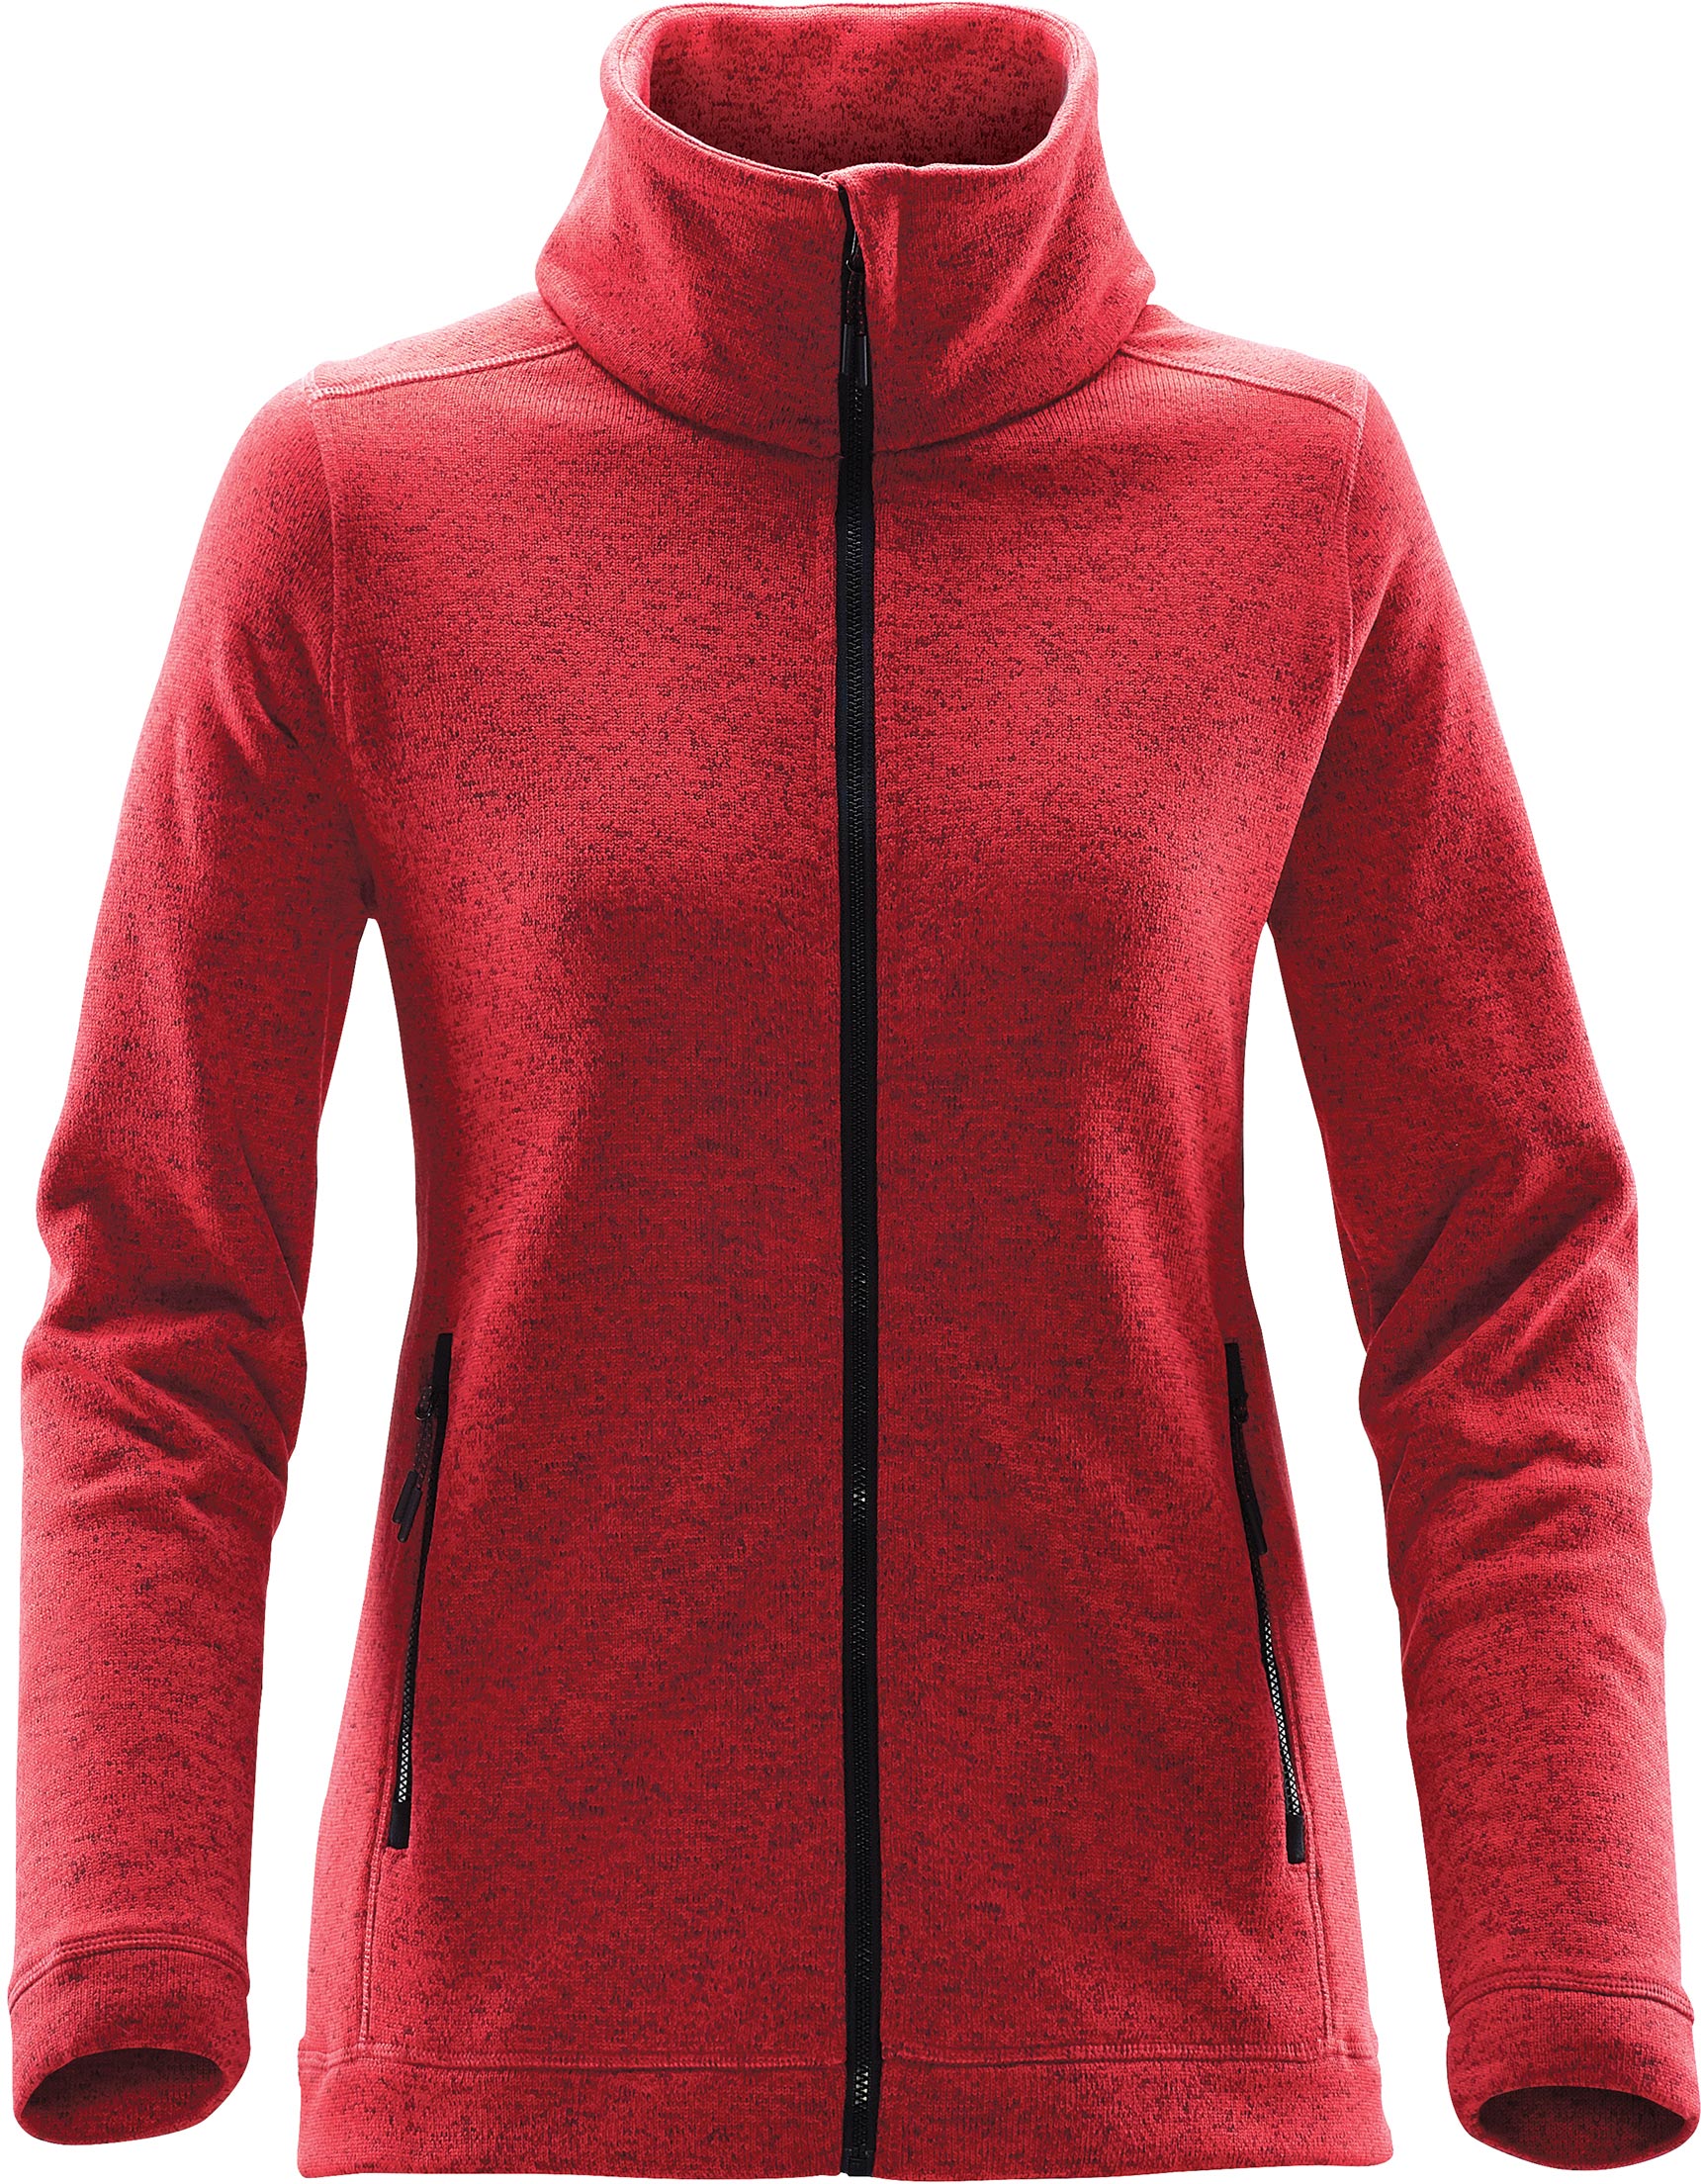 Stormtech NFX-2W - Women's Tundra Sweater Fleece Jacket